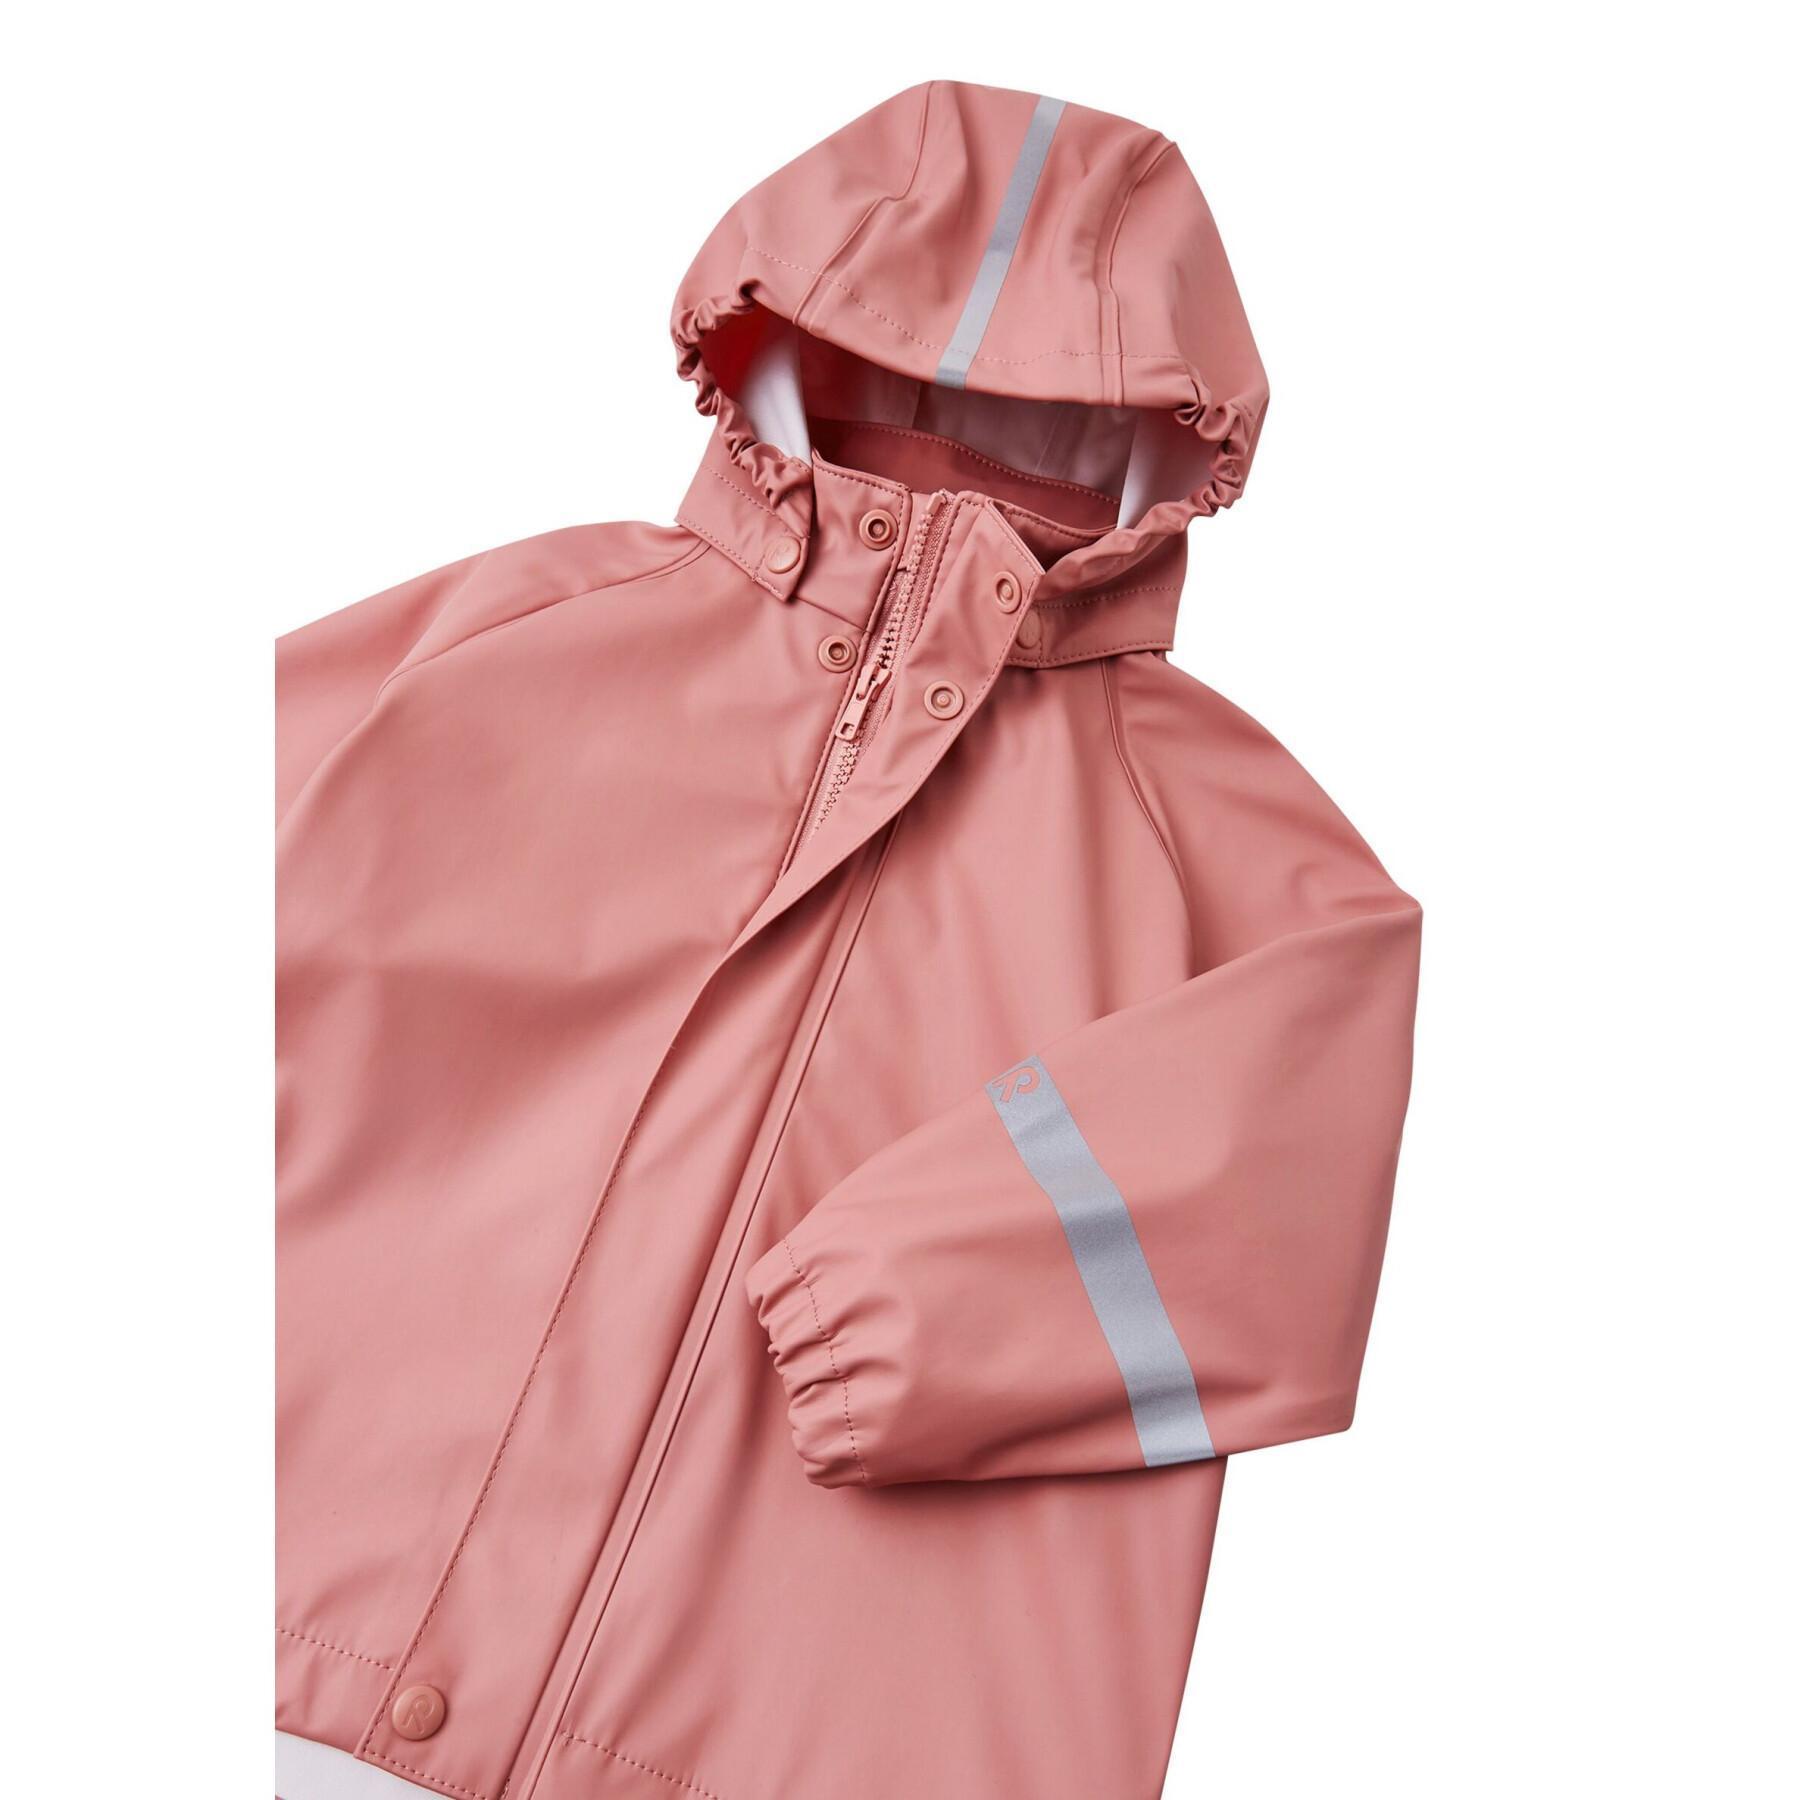 Waterproof jacket for children Reima Lampi